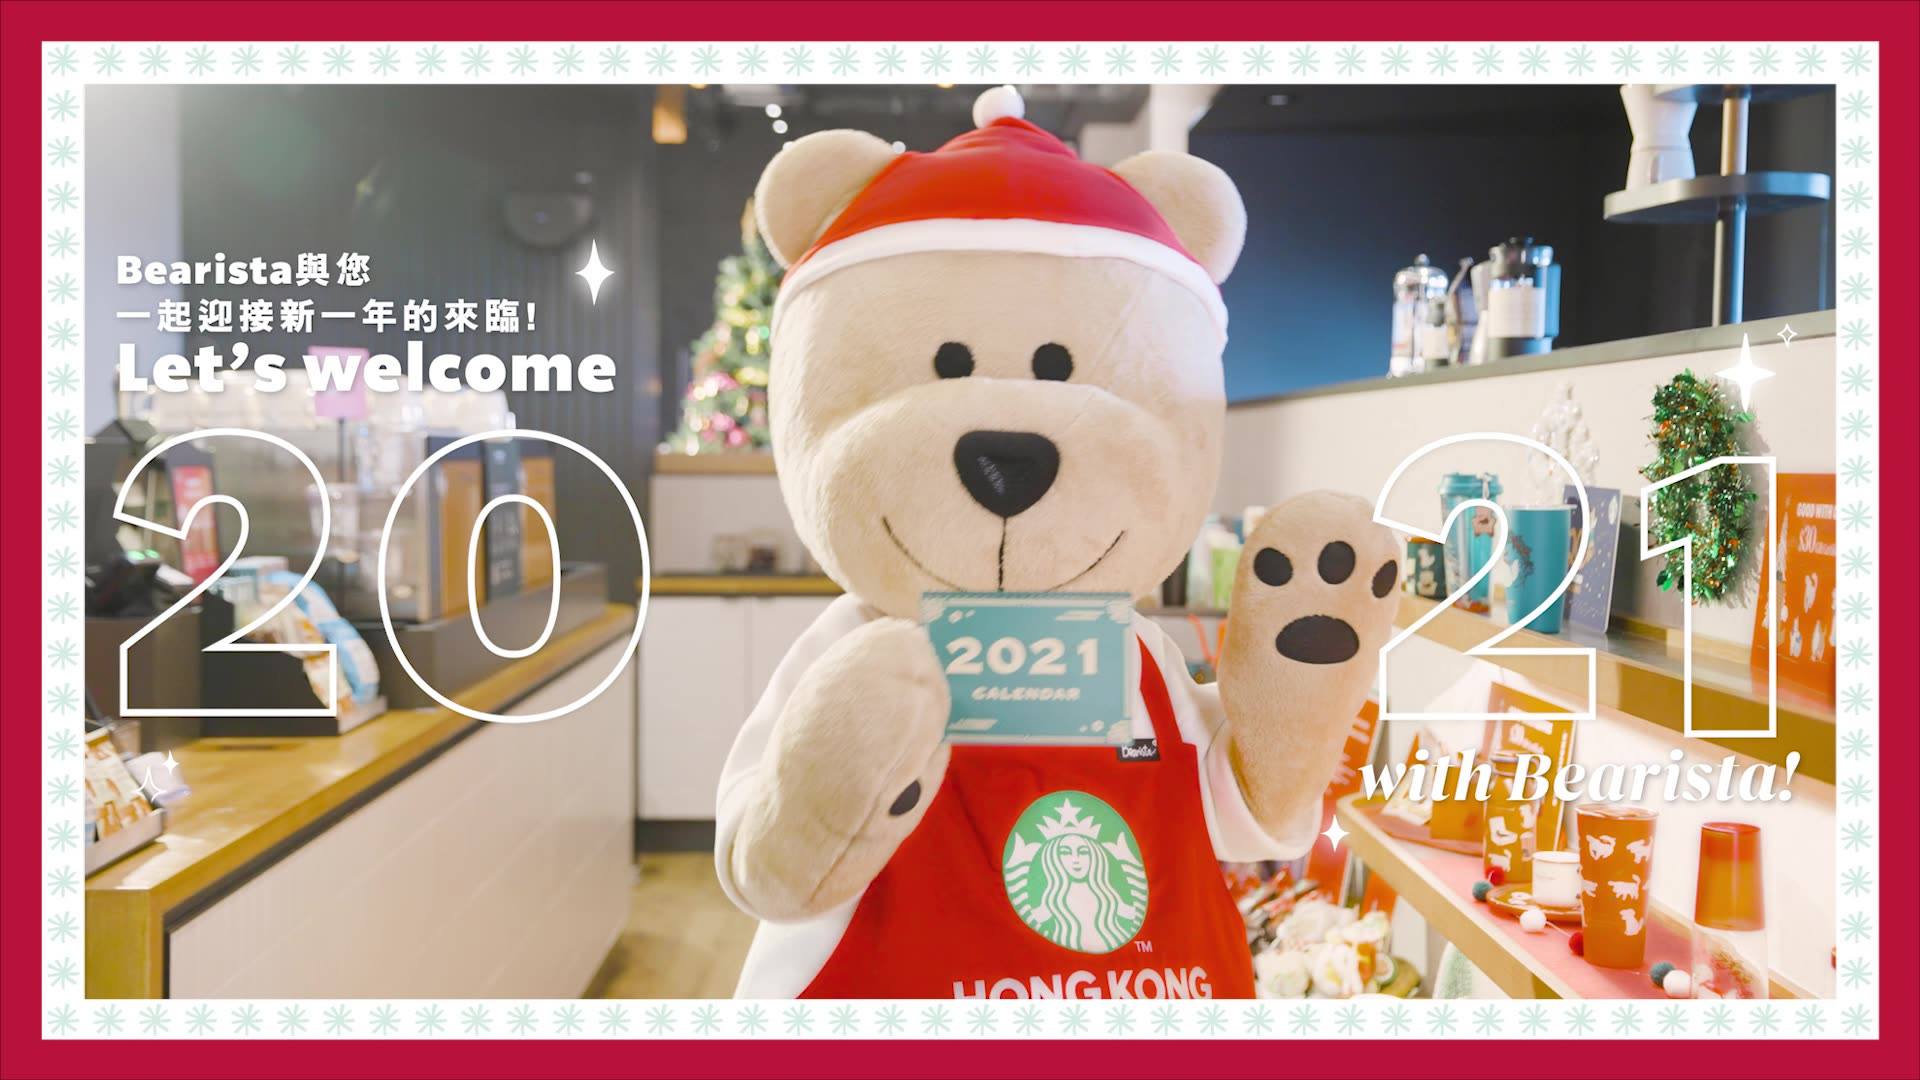 和2020說再見！星巴克熊願各位於來年過得更健康幸福。新年快樂！🎉 Bearista wishes you a fruitful and prosperous year ahead! 🎉 #StarbucksHK...